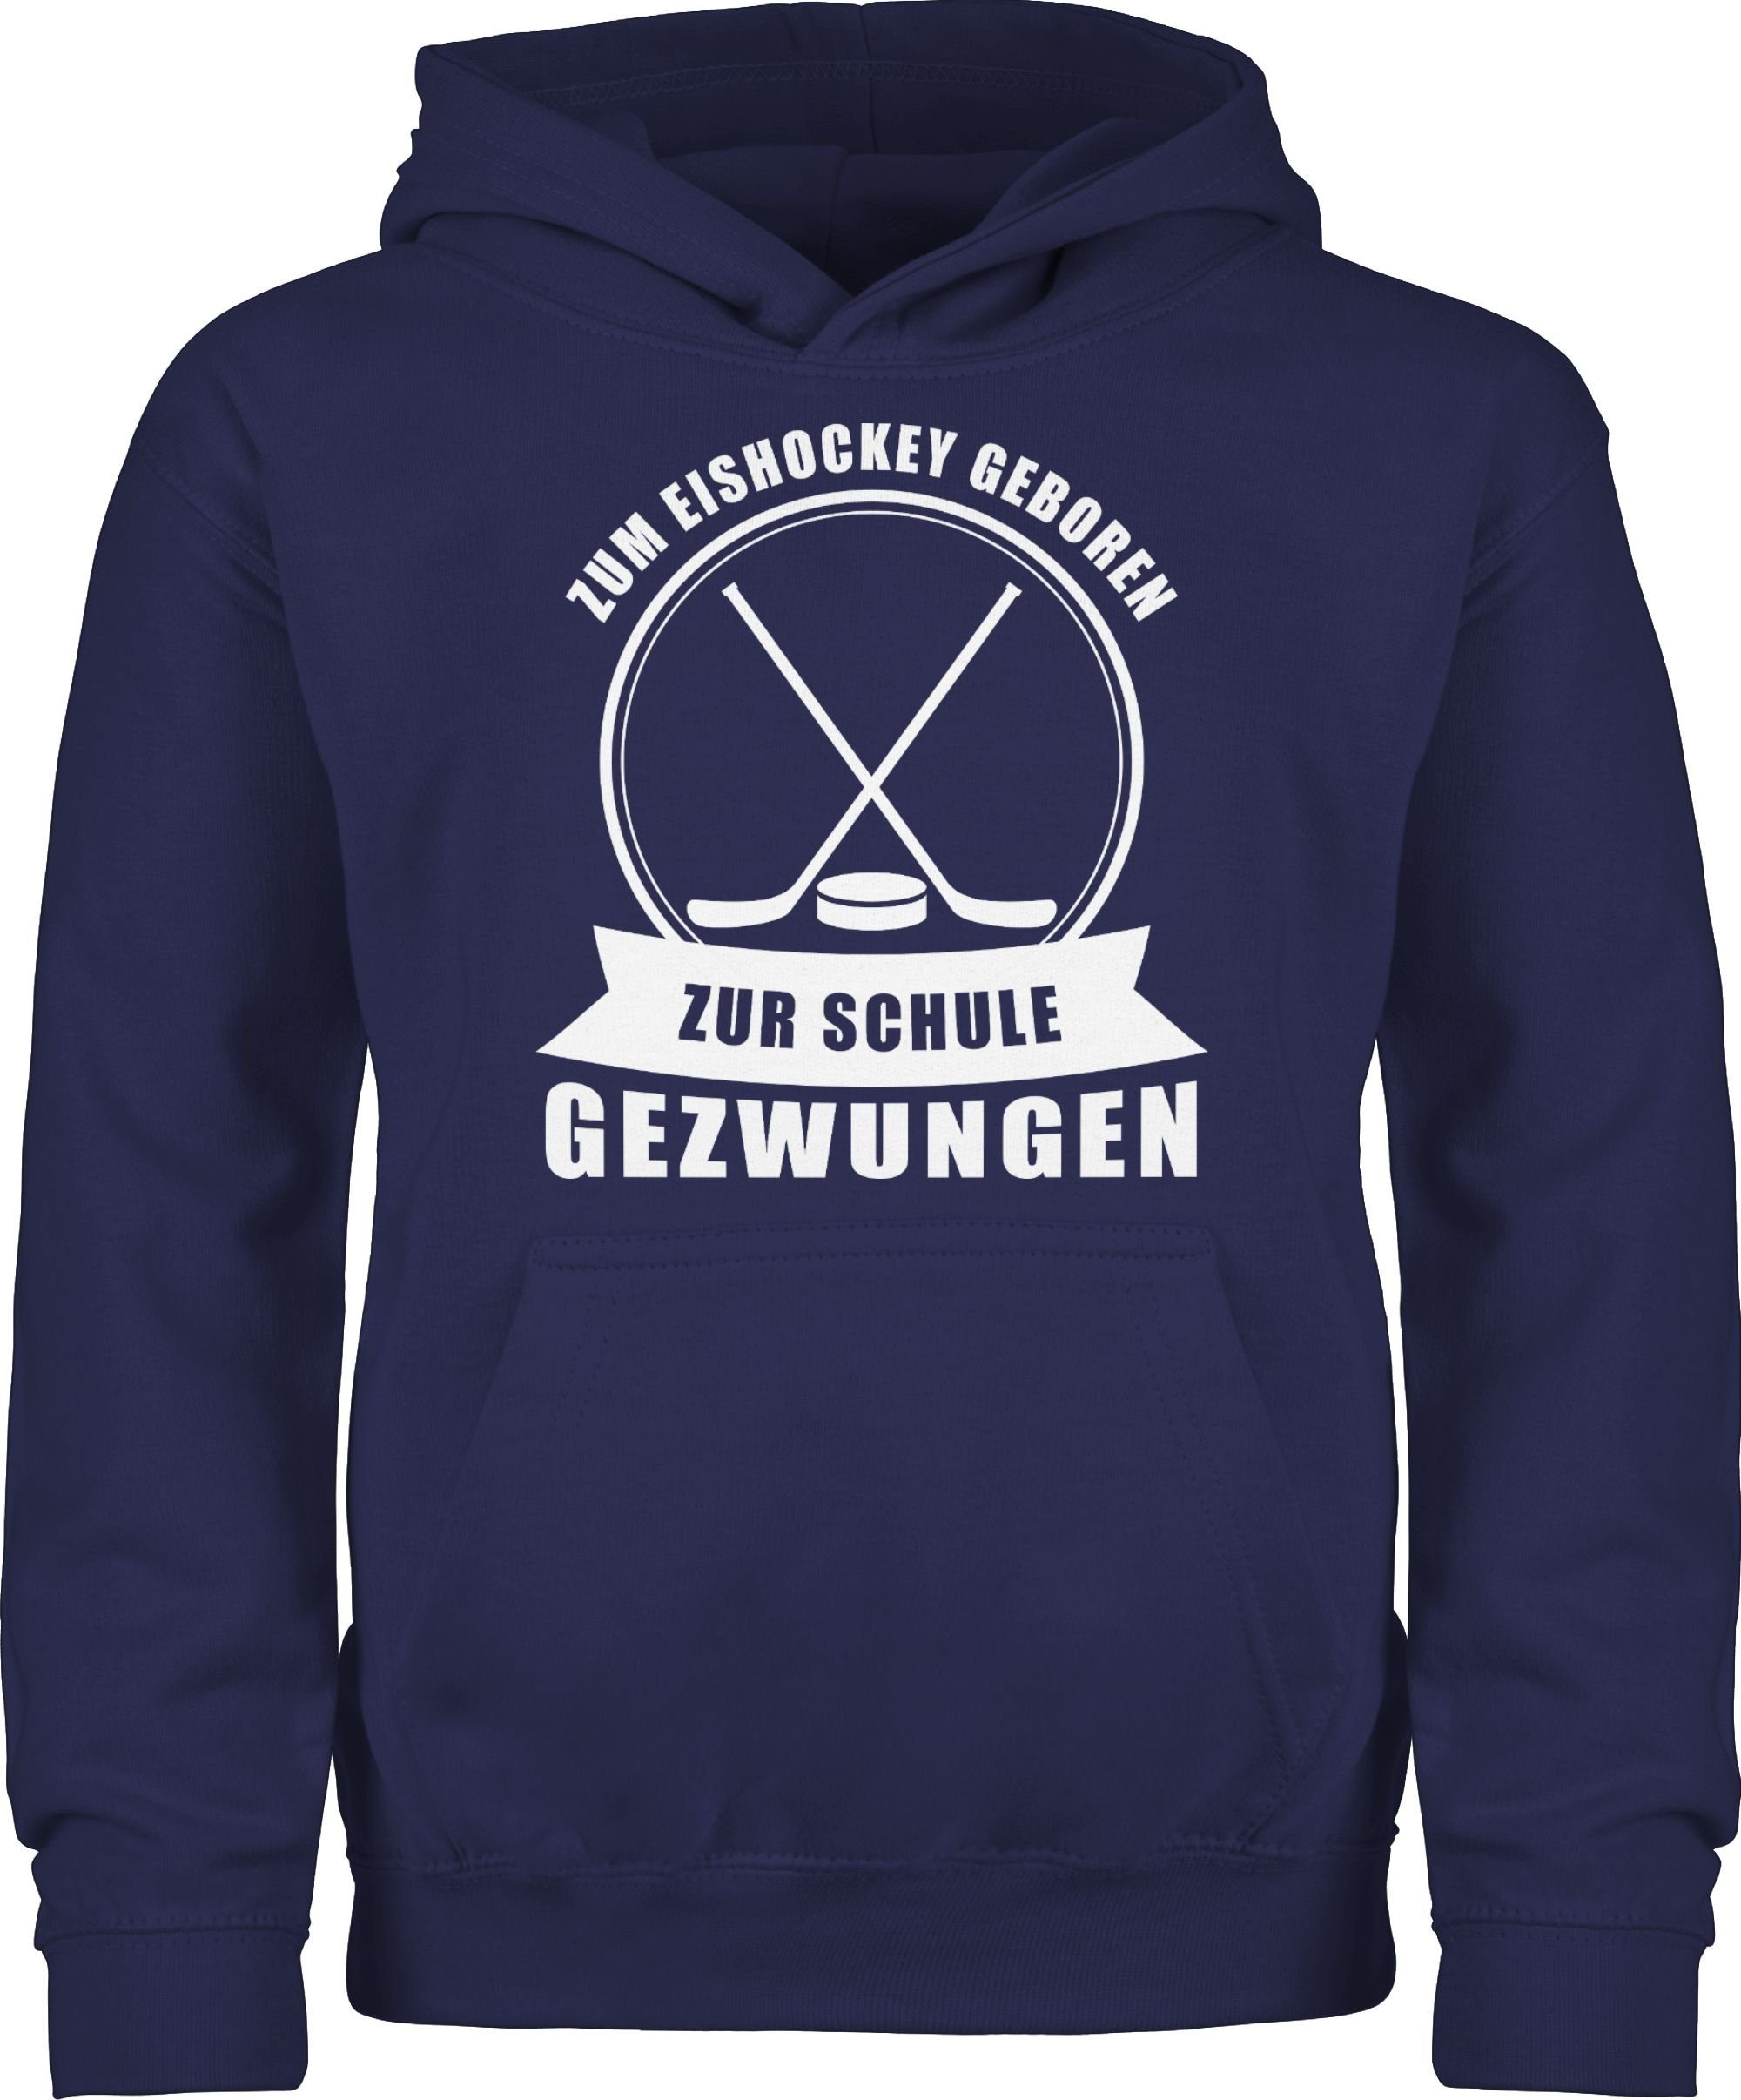 Shirtracer Hoodie Zum Eishockey geboren. Zur Schule gezwungen Kinder Sport Kleidung 2 Navy Blau